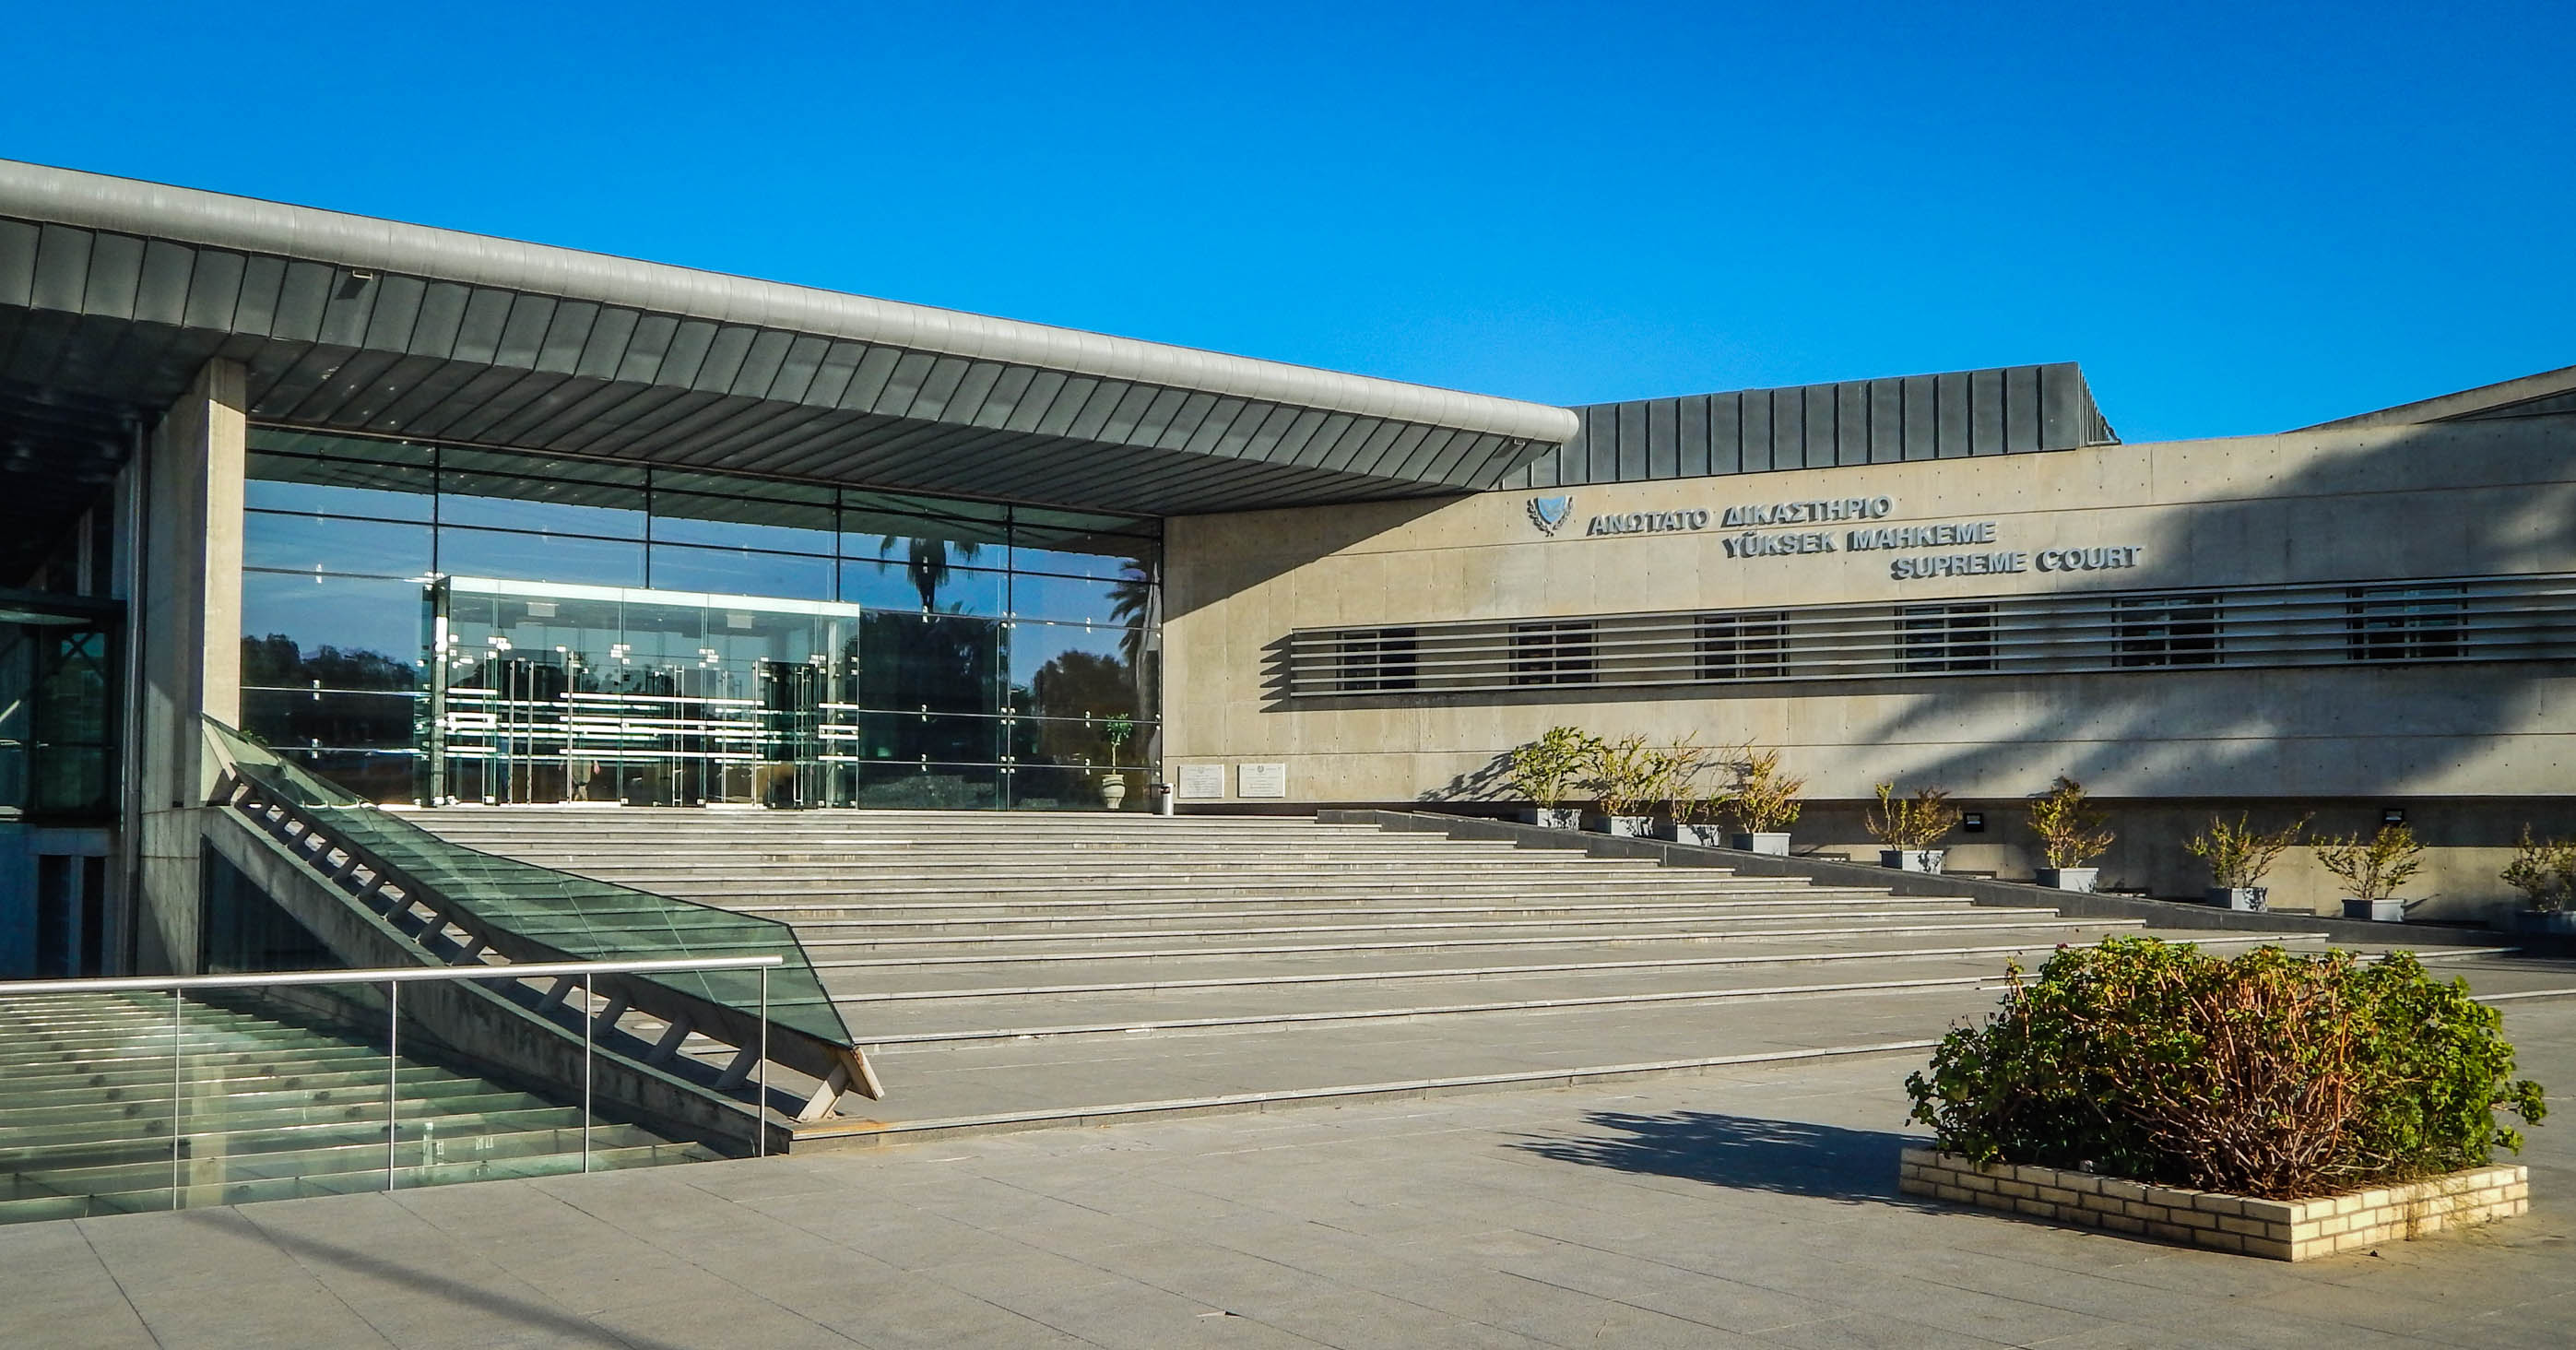 Κτήριο Ανωτάτου Δικαστηρίου και Σχολής Δικαστών Κύπρου